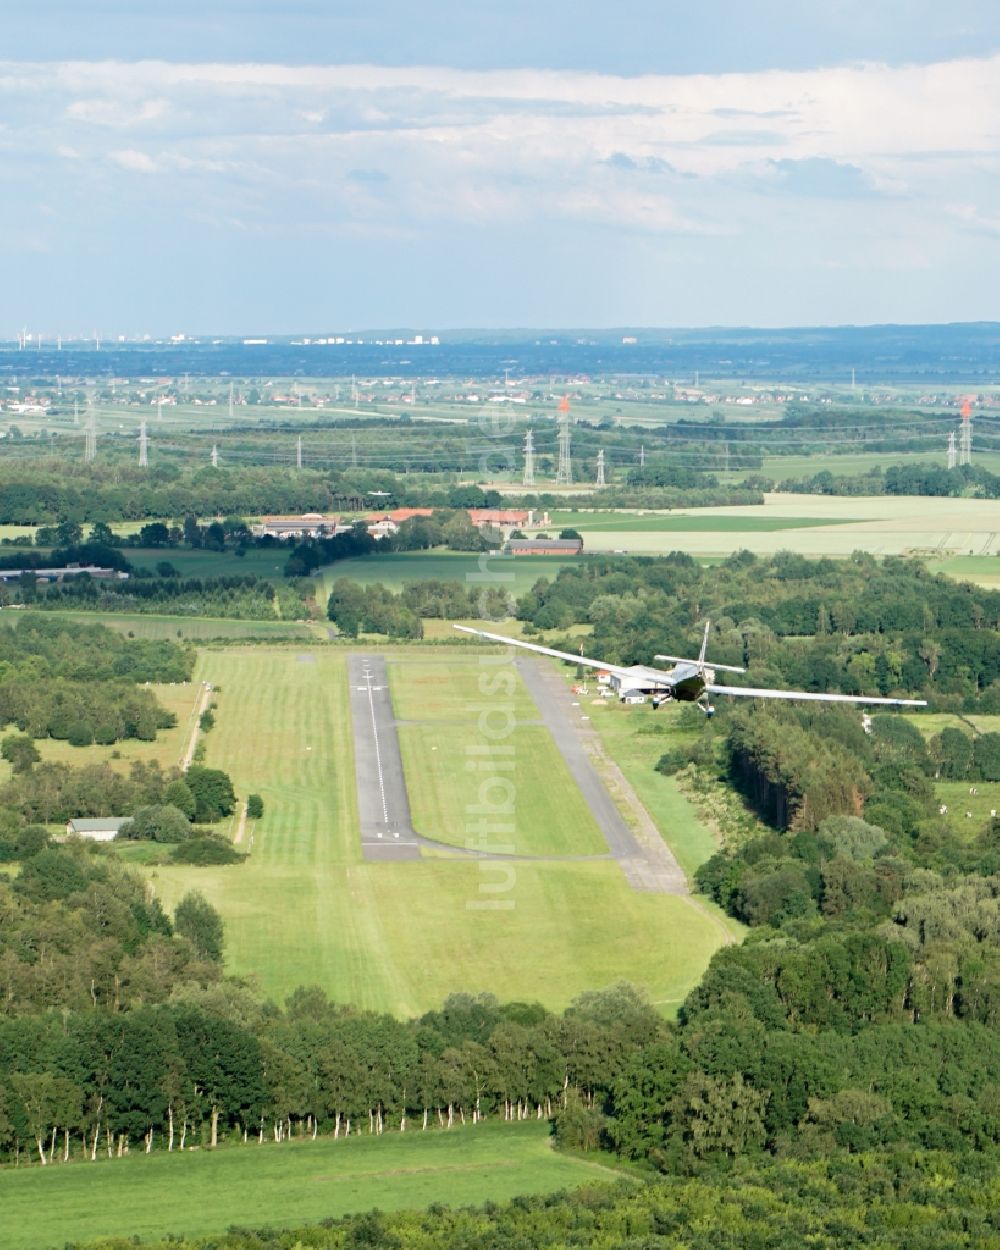 Luftaufnahme Stade - Motorsegler Scheibe SF-25 im Landeanflug zur Landung auf dem Flughafen in Stade im Bundesland Niedersachsen, Deutschland